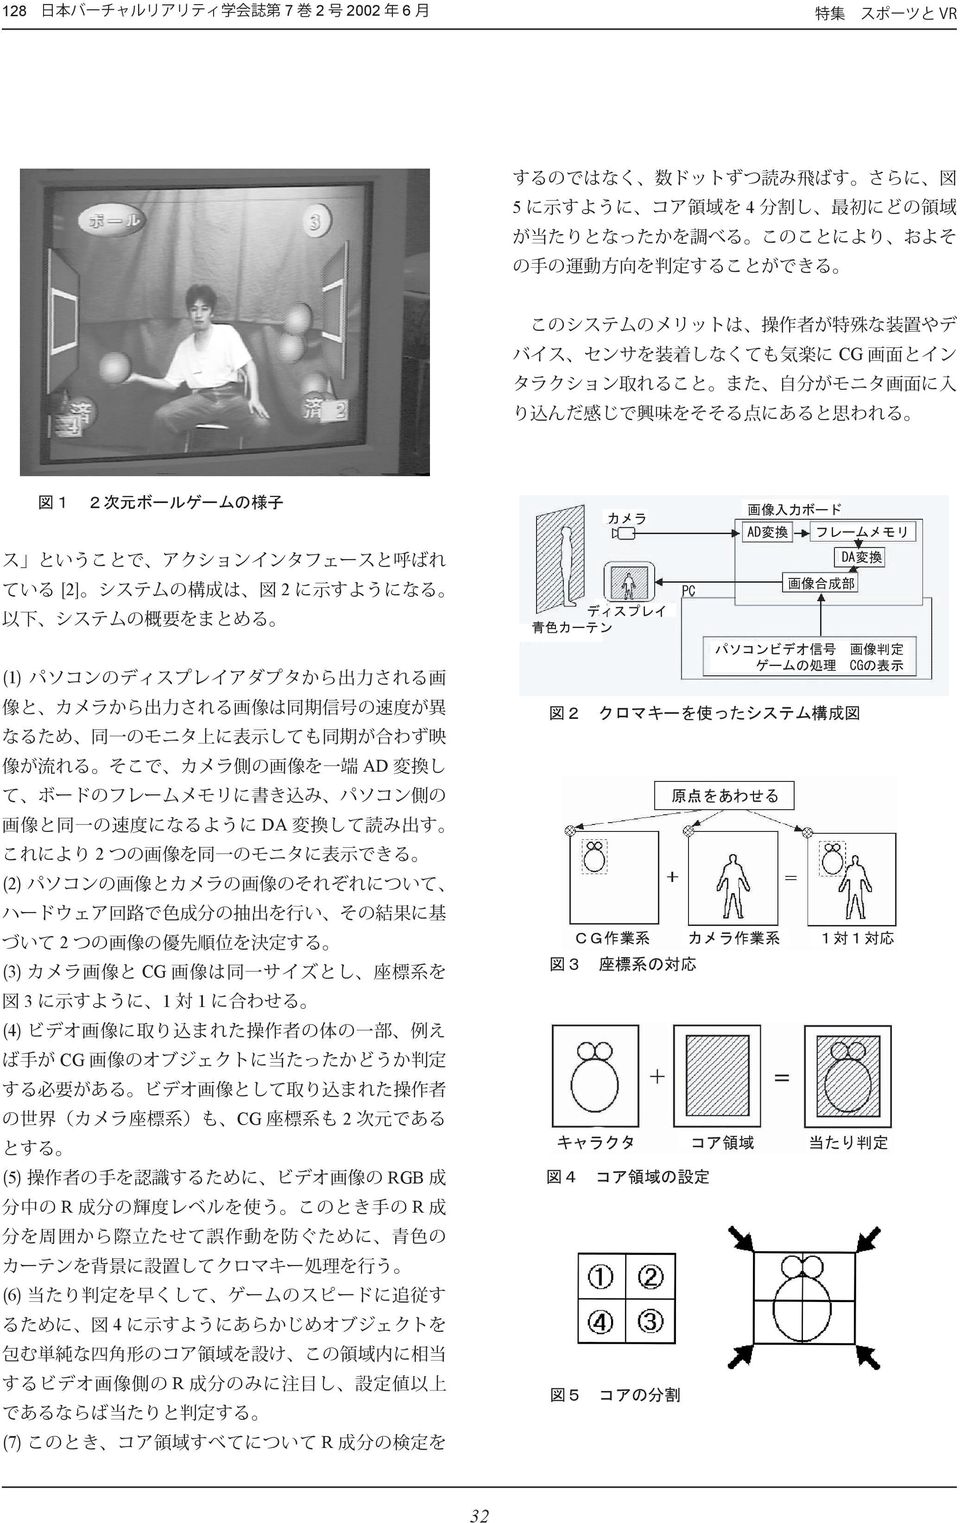 換 パソコンビデオ 信 号 画 像 判 定 ゲームの 処 理 CGの 表 示 図 2 クロマキーを 使 ったシステム 構 成 図 原 点 をあわせる CG 作 業 系